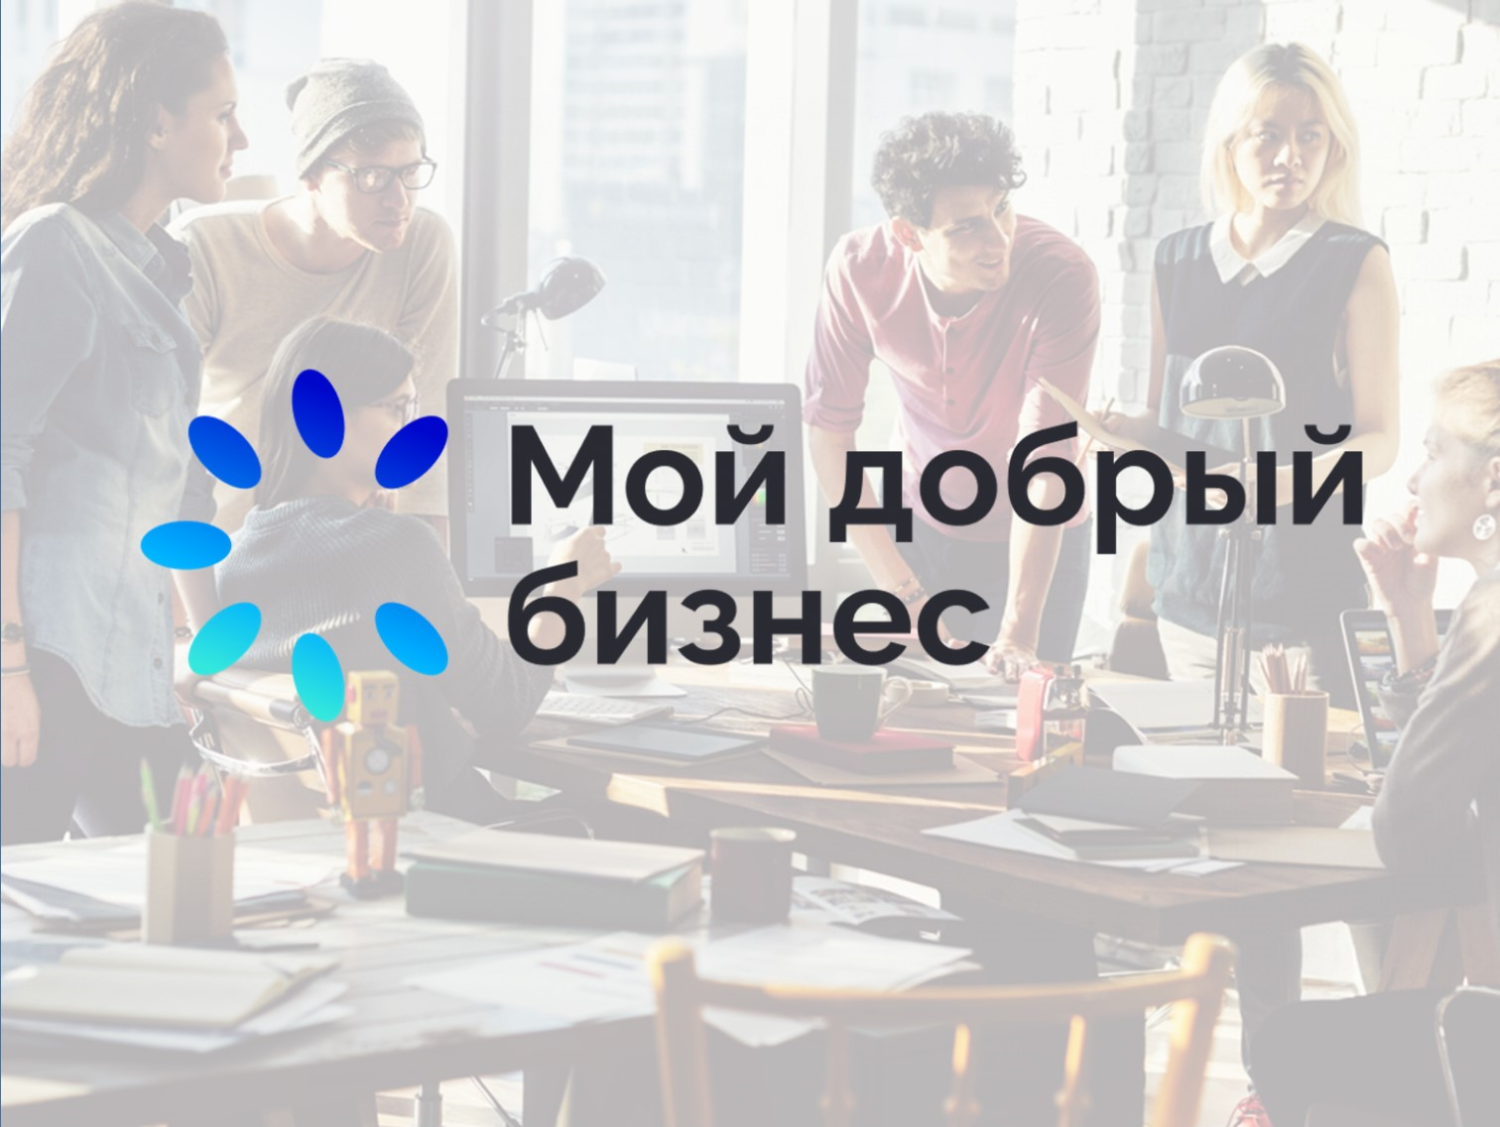 Пензенские социальные предприятия заняли призовые места во всероссийском конкурсе «Мой добрый бизнес»